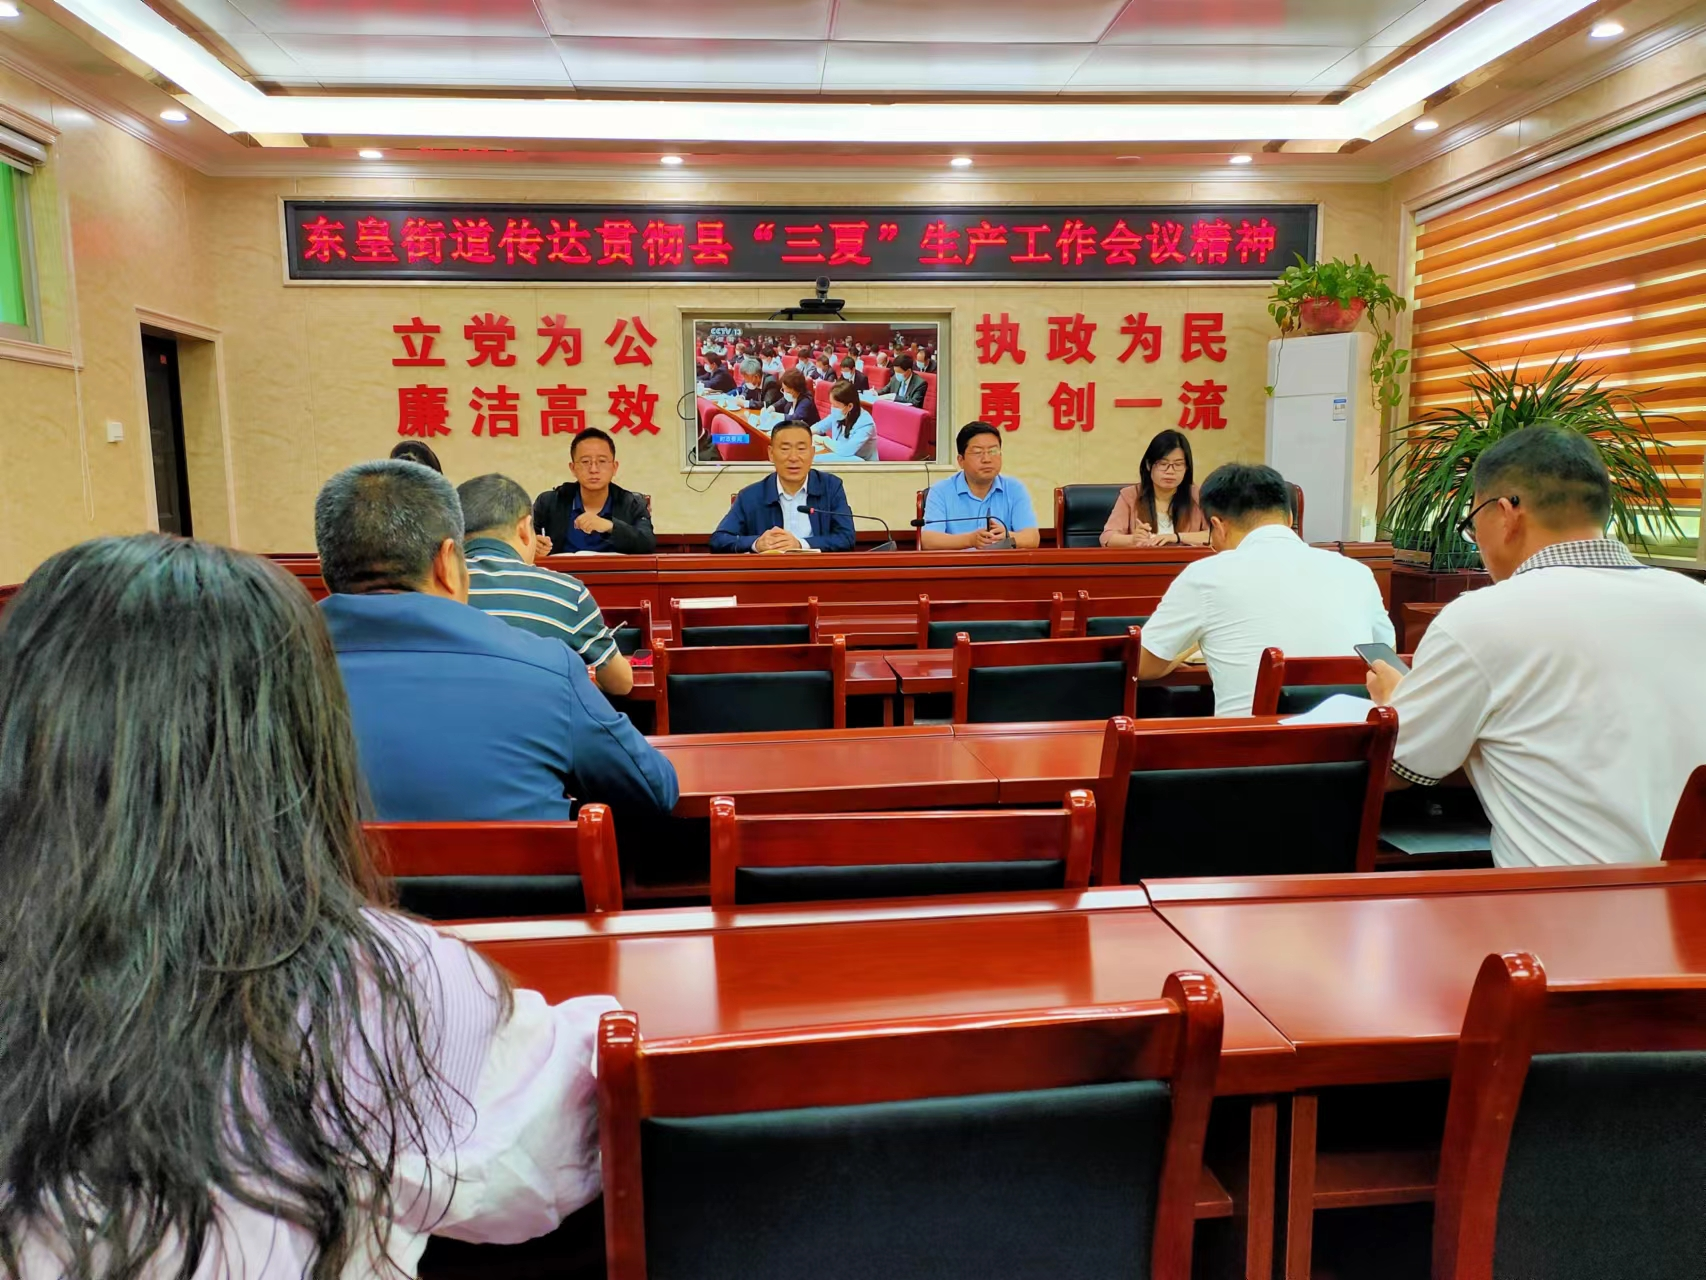  平舆县第四初级中学  举行“胡丹丹初中语文首席教师工作室”揭牌仪式